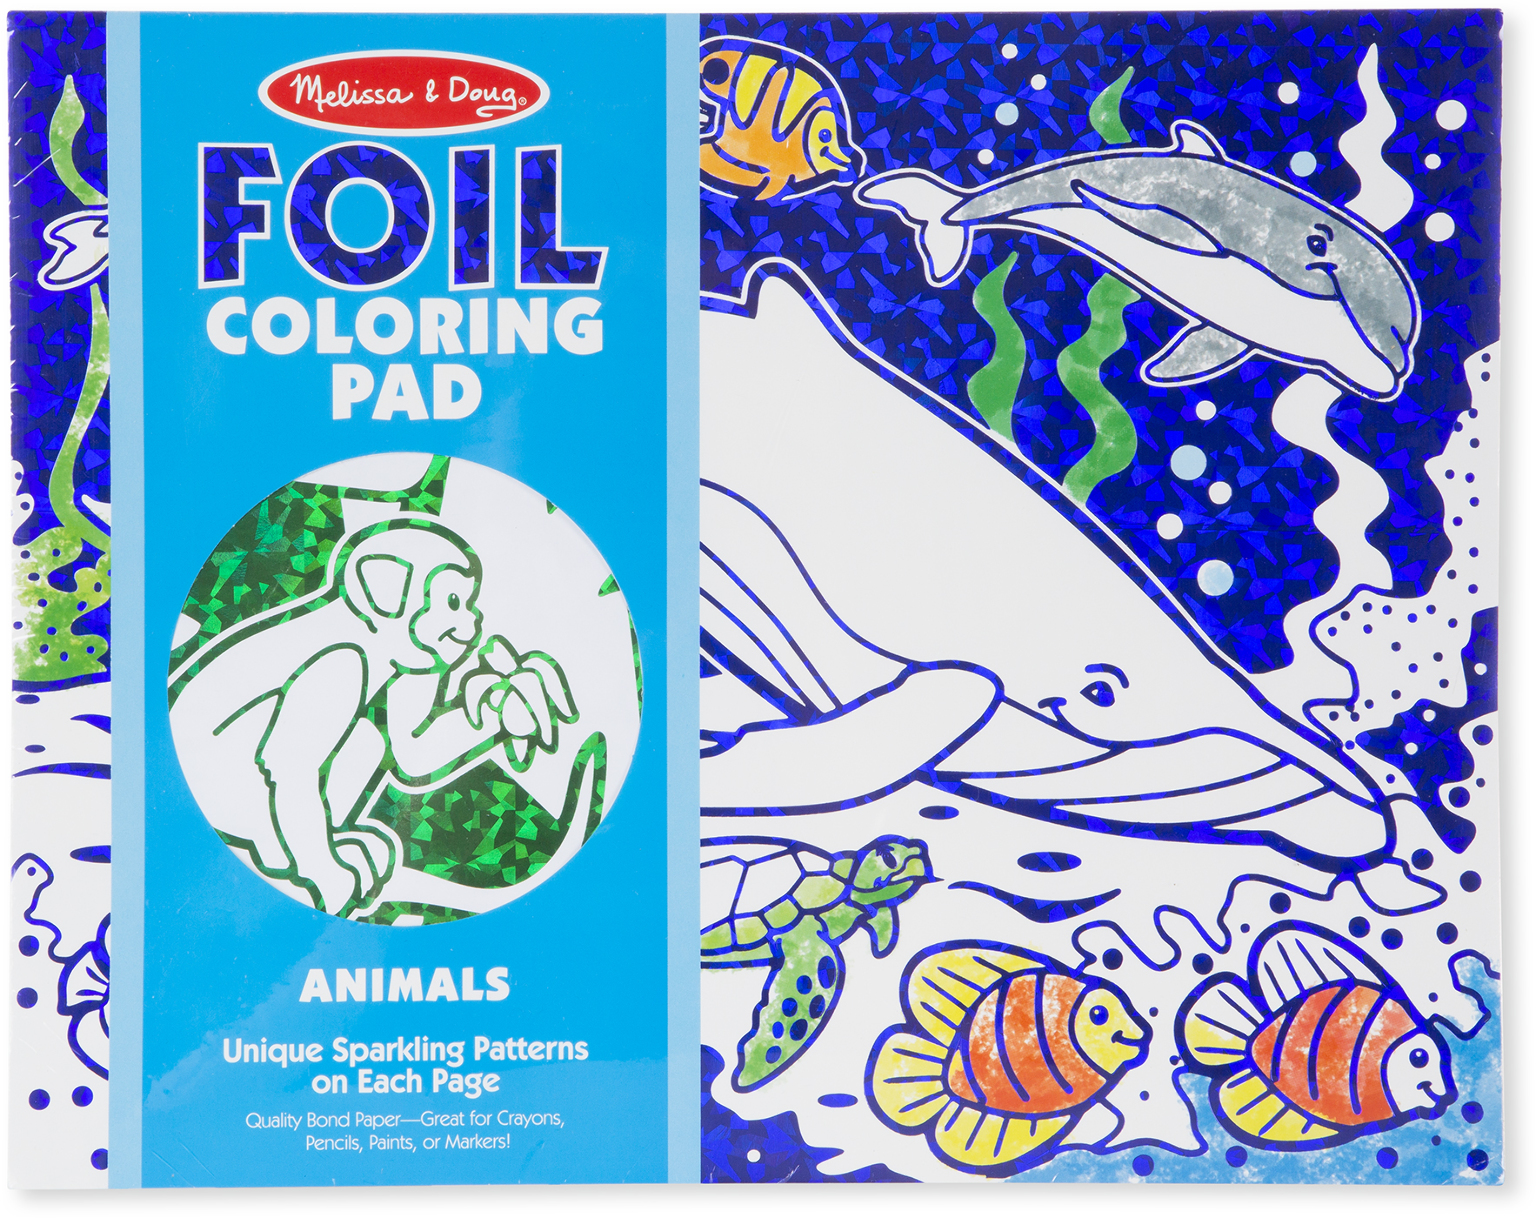 Wholesale Melissa & Doug Foil Coloring Pad - Animals(20x.97)